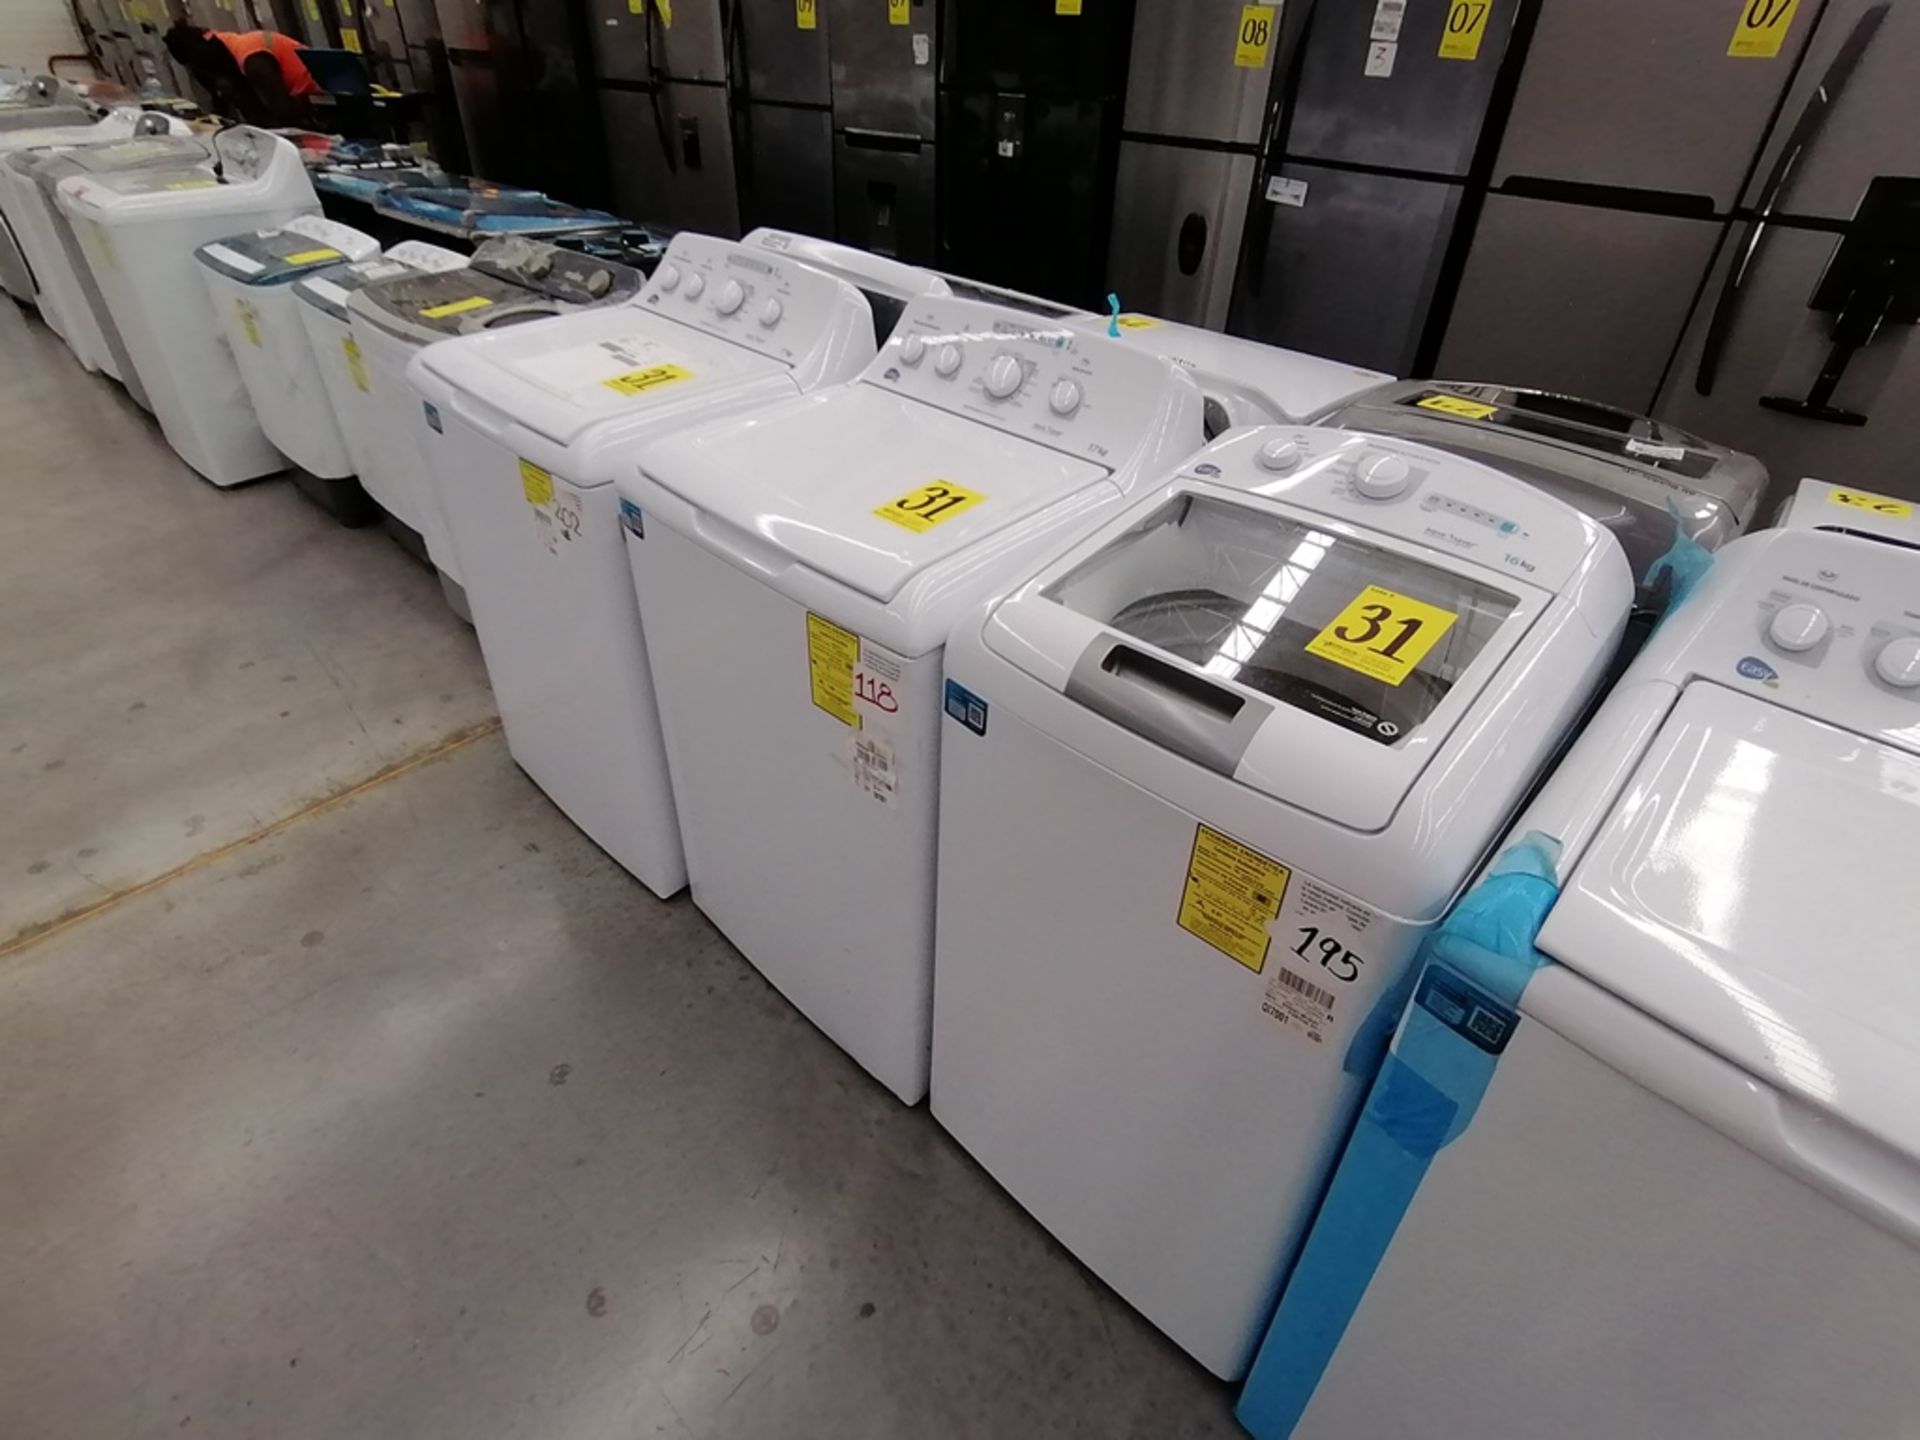 Lote de 3 lavadoras contiene: 1 Lavadora de 17KG, Marca Easy, Modelo LEA77114CBAB03, Serie 2105S522 - Image 16 of 30